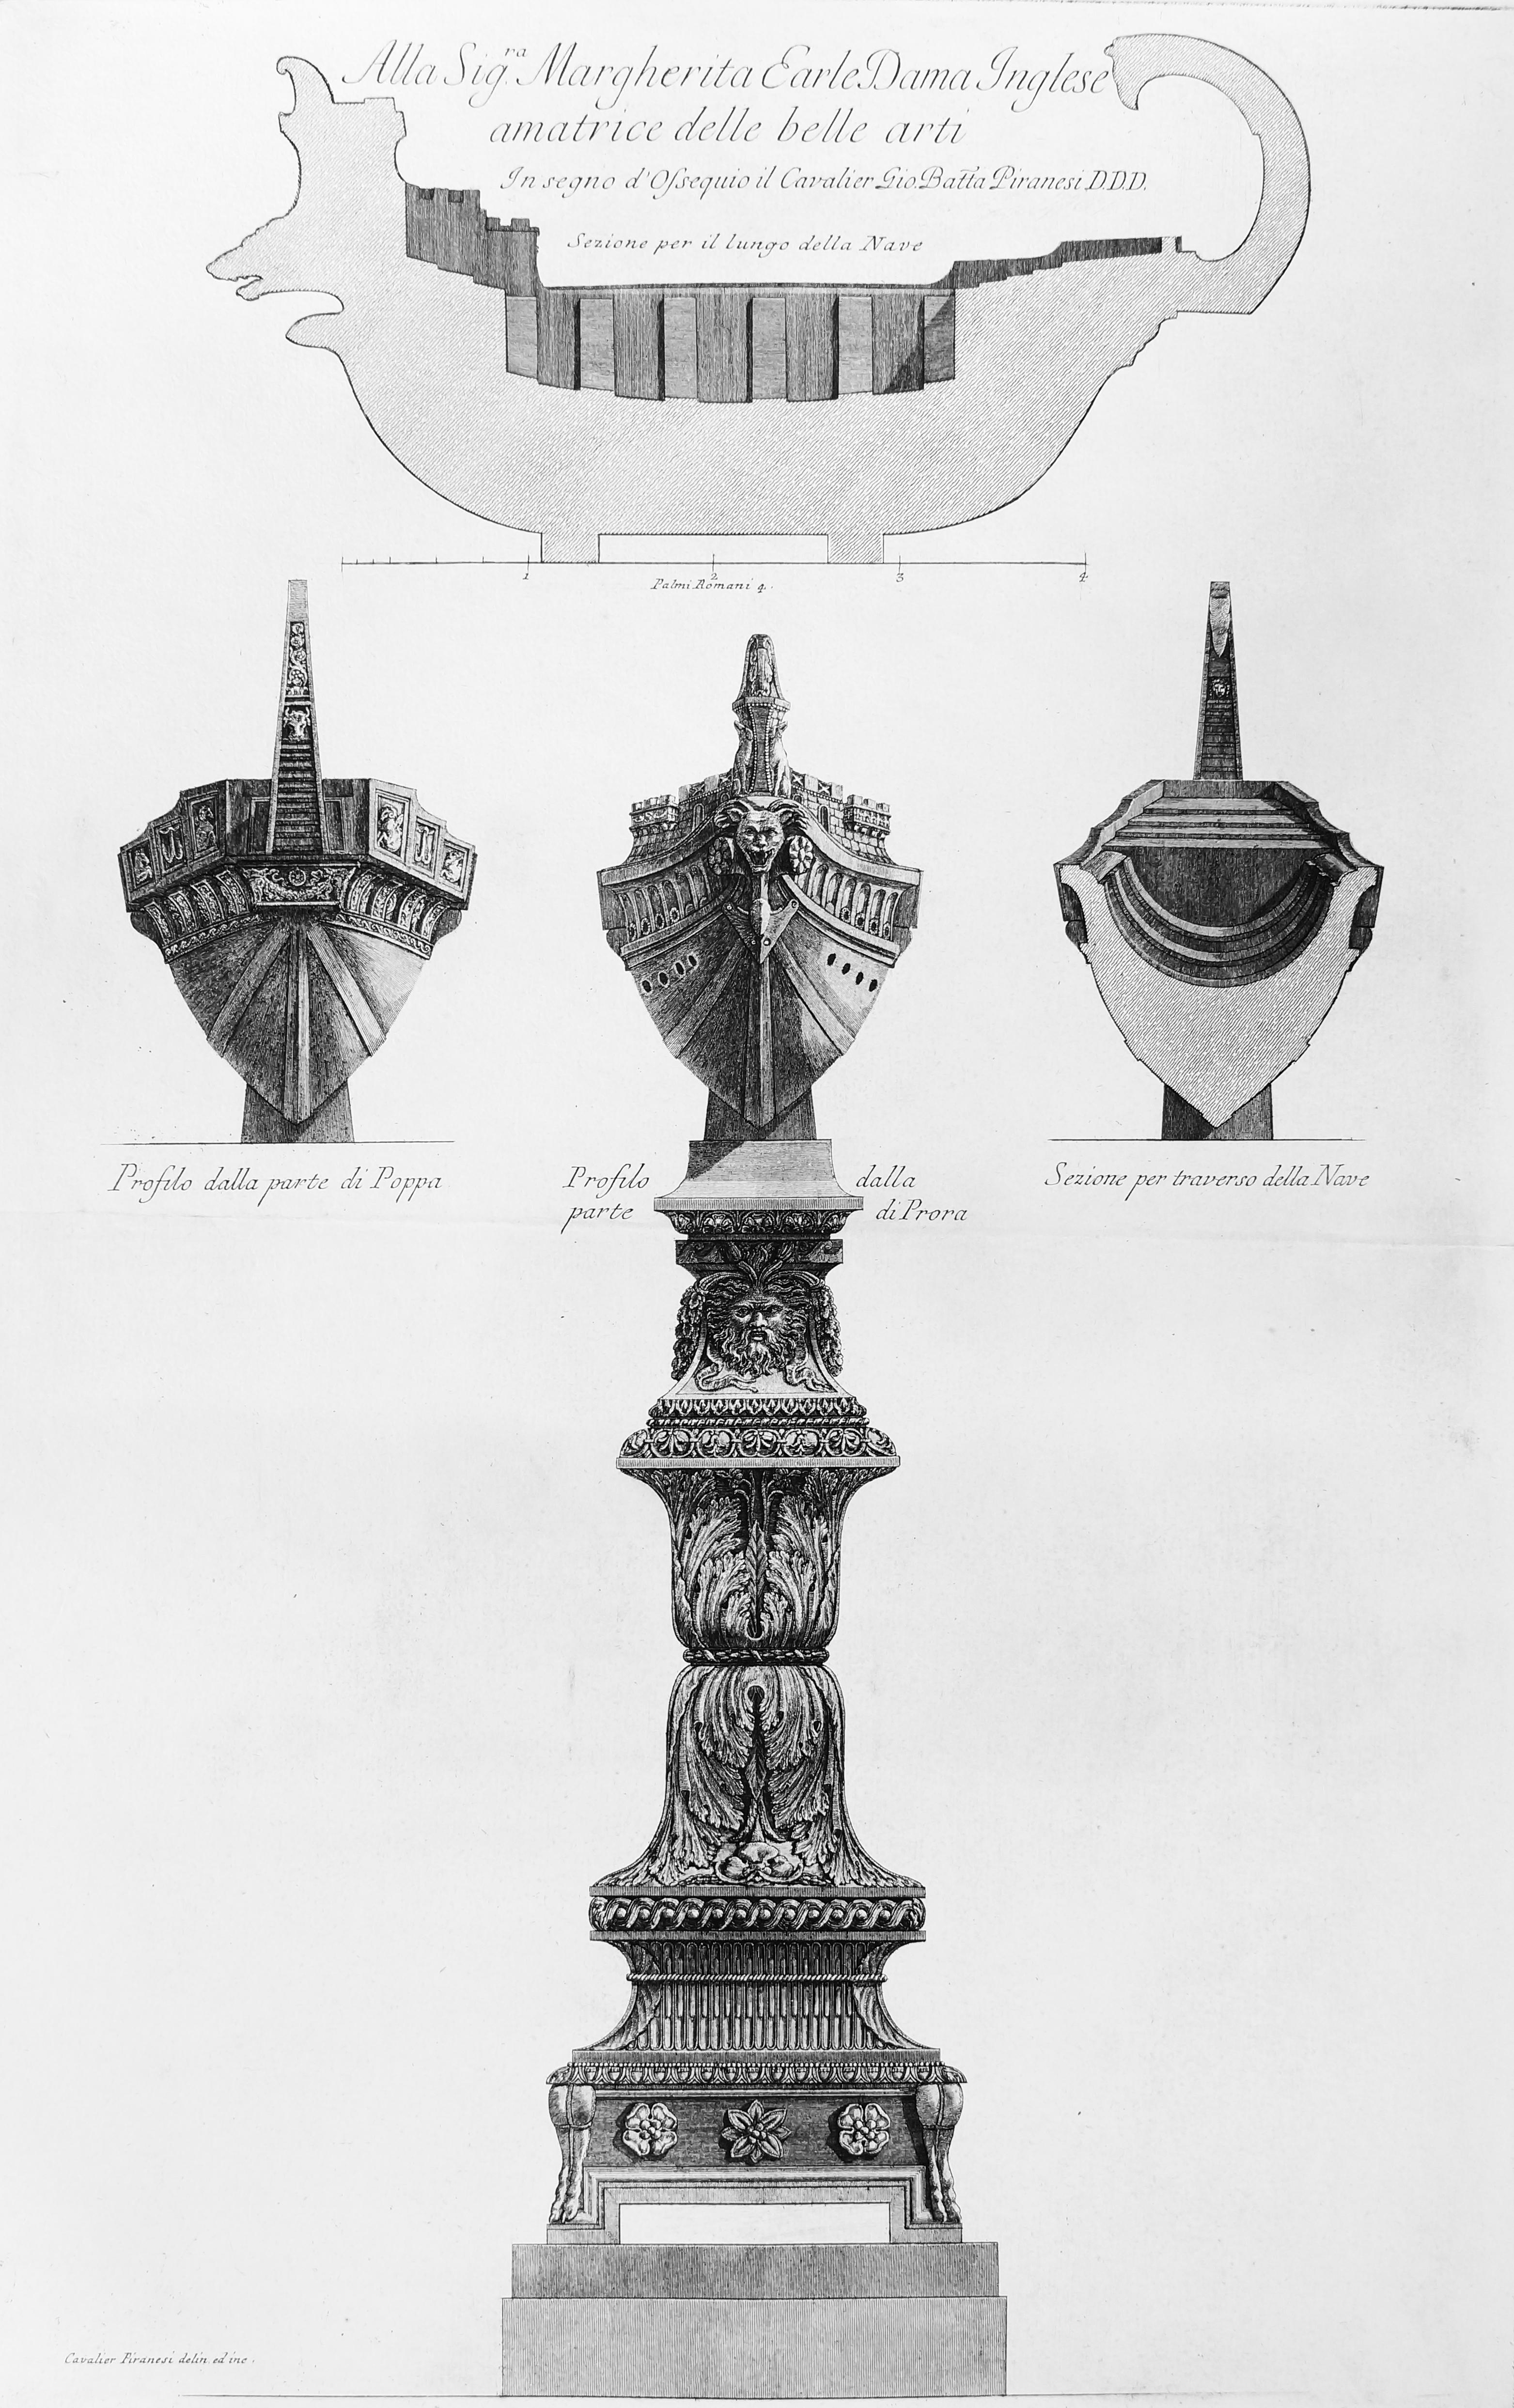 Giovanni Battista Piranesi Figurative Print - Sezione per il Luogo della Nave - Etching by G.B. Piranesi - 1778